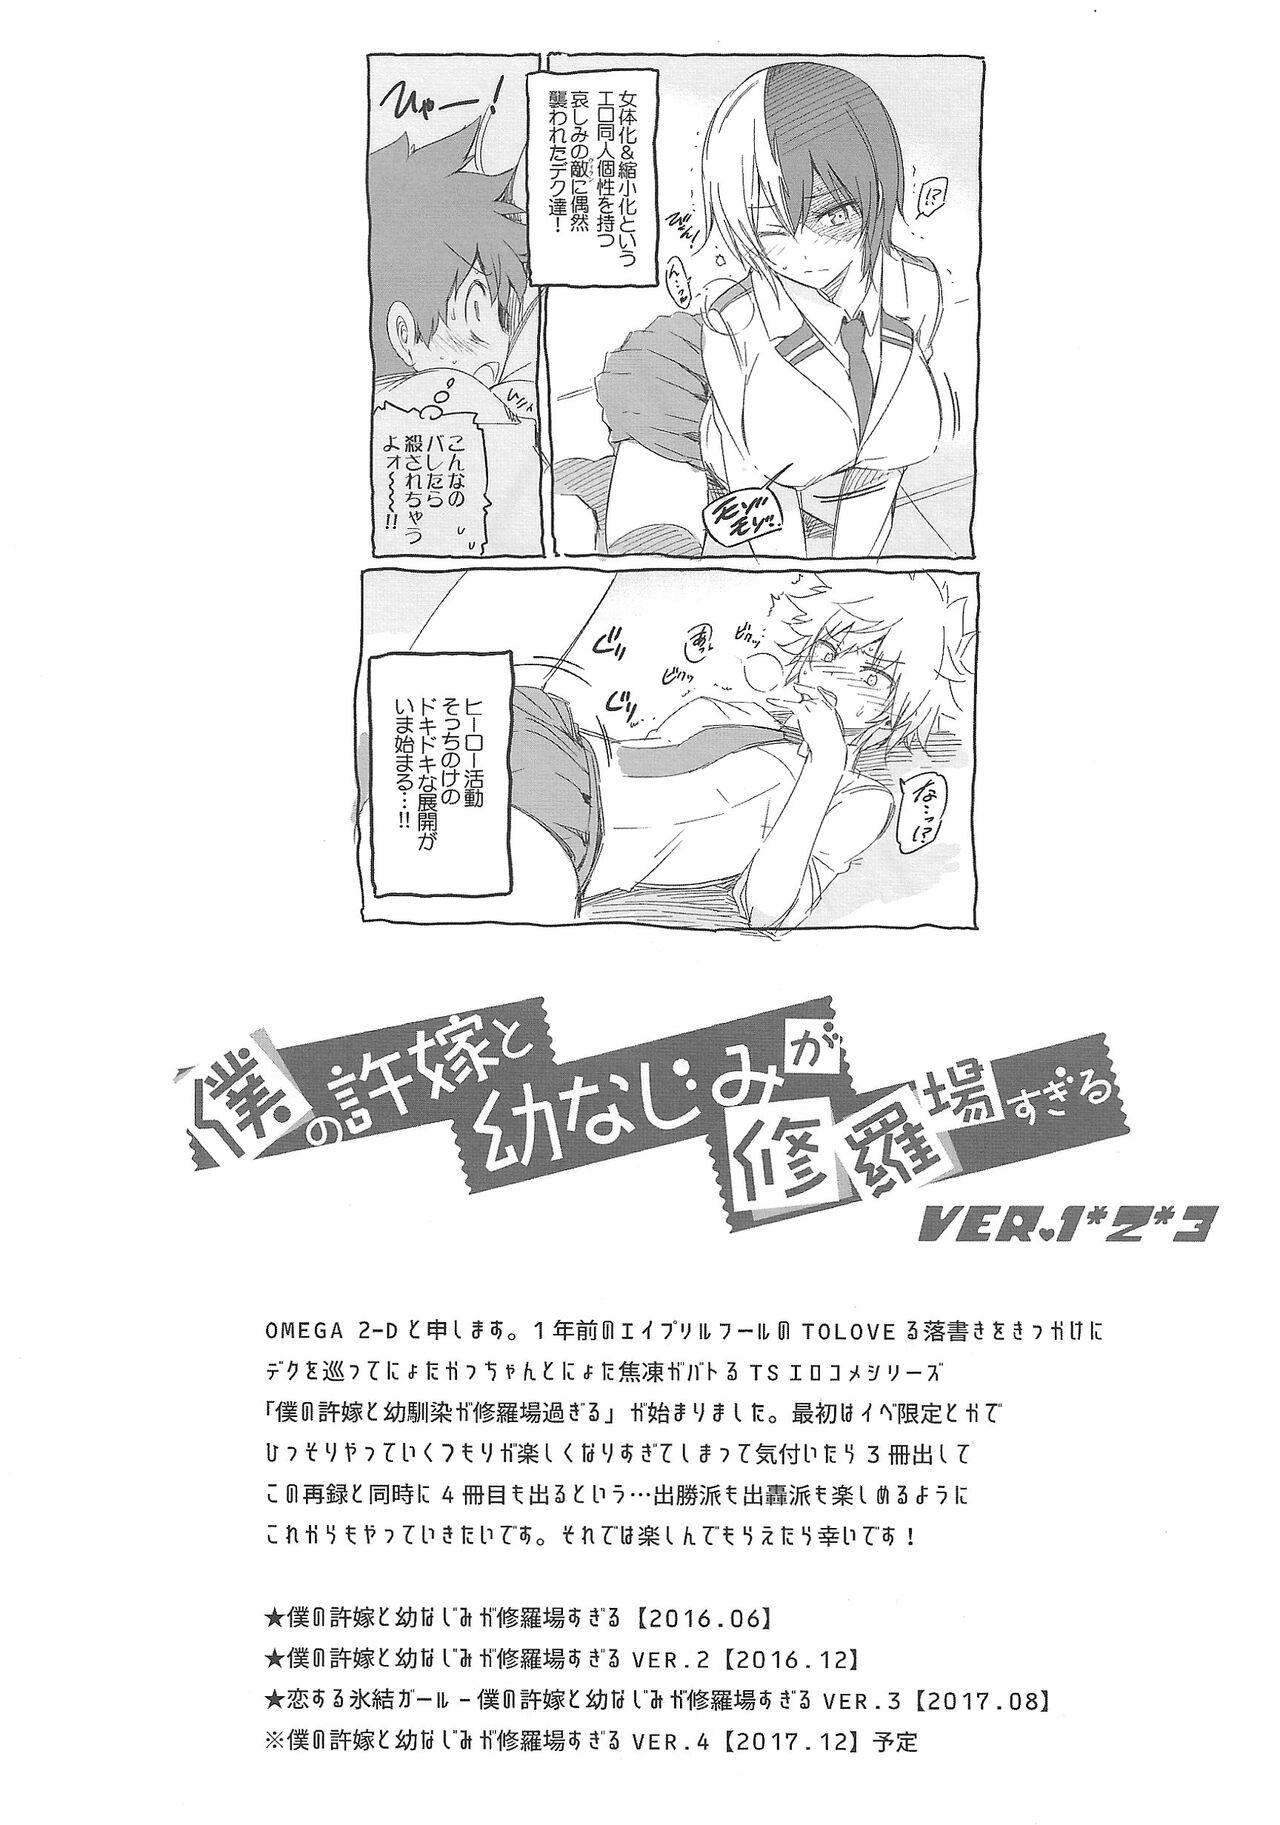 Sis Boku no Iinazuke to Osananajimi ga Shuraba Sugiru Volume 1, 2 & 3 - My hero academia | boku no hero academia Perfect Ass - Page 3